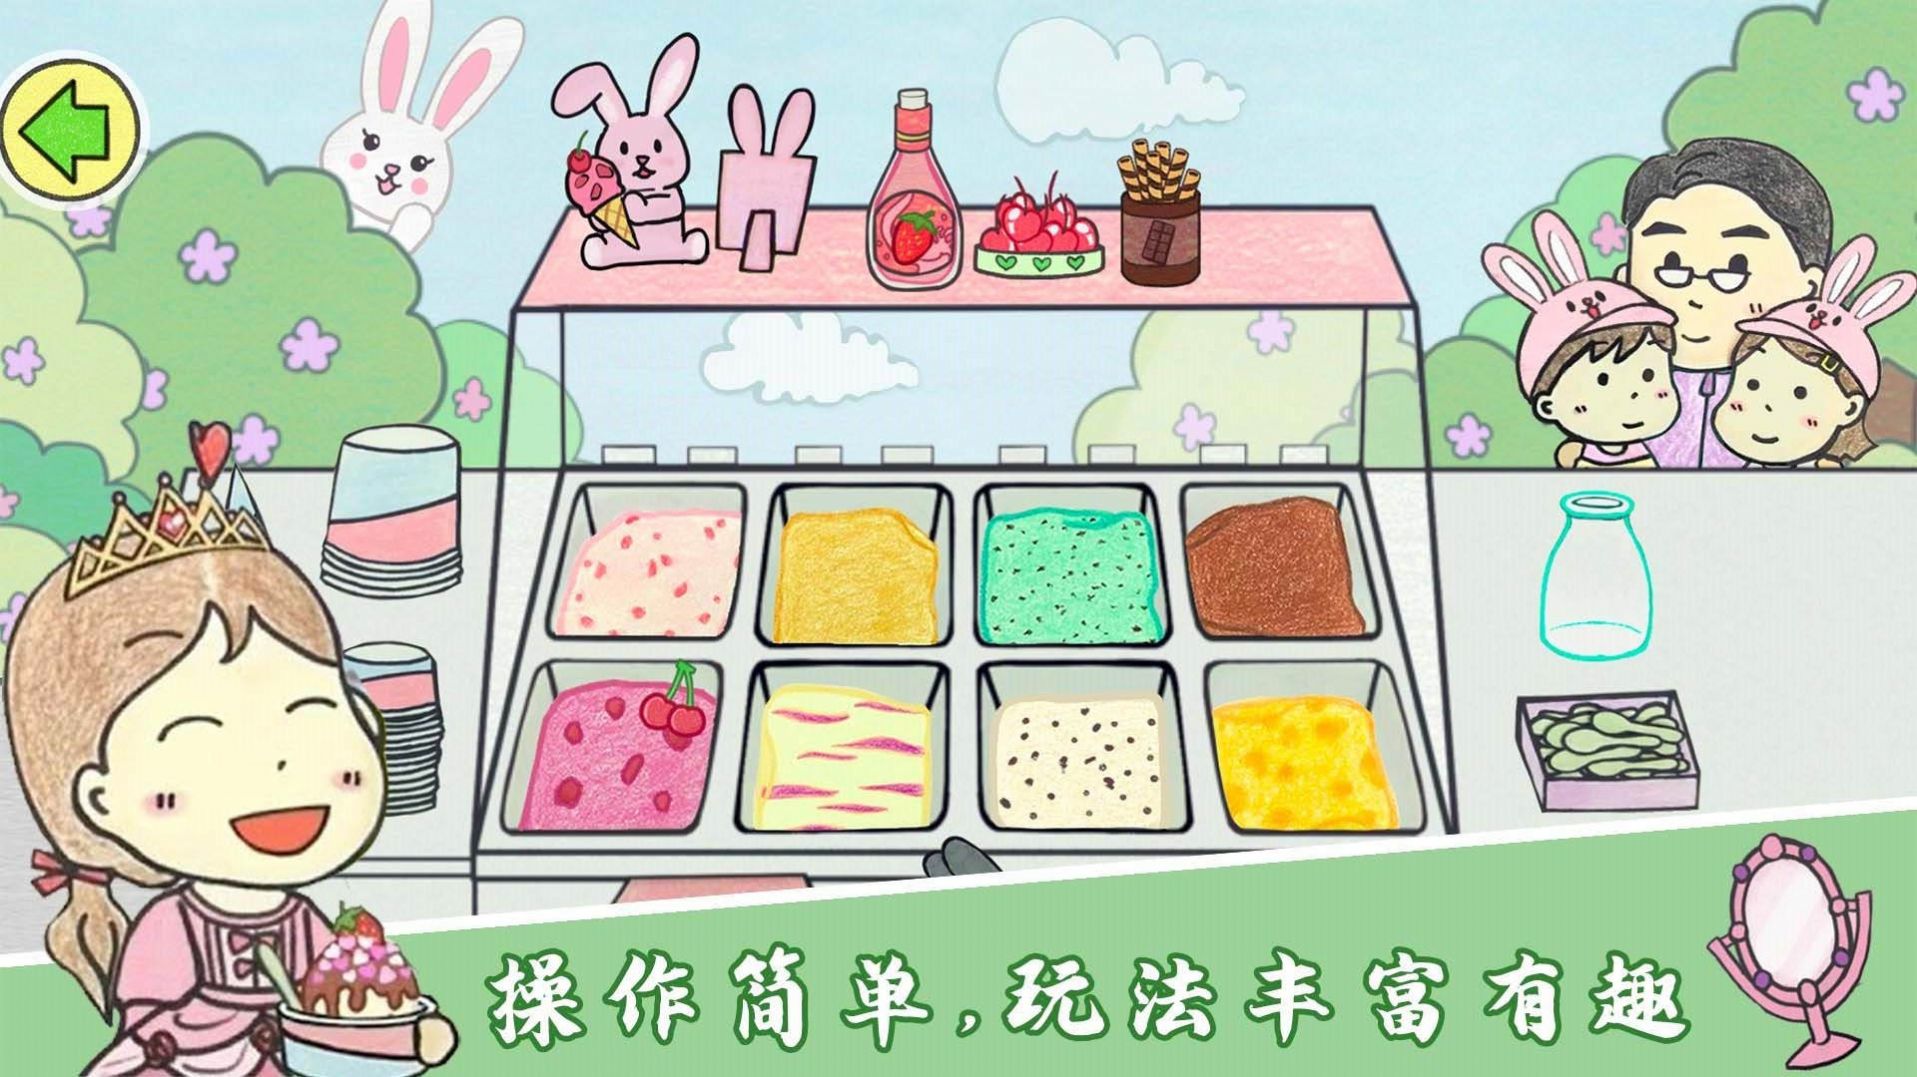 美味冰淇淋梦工厂游戏下载安装 v1.0截图1